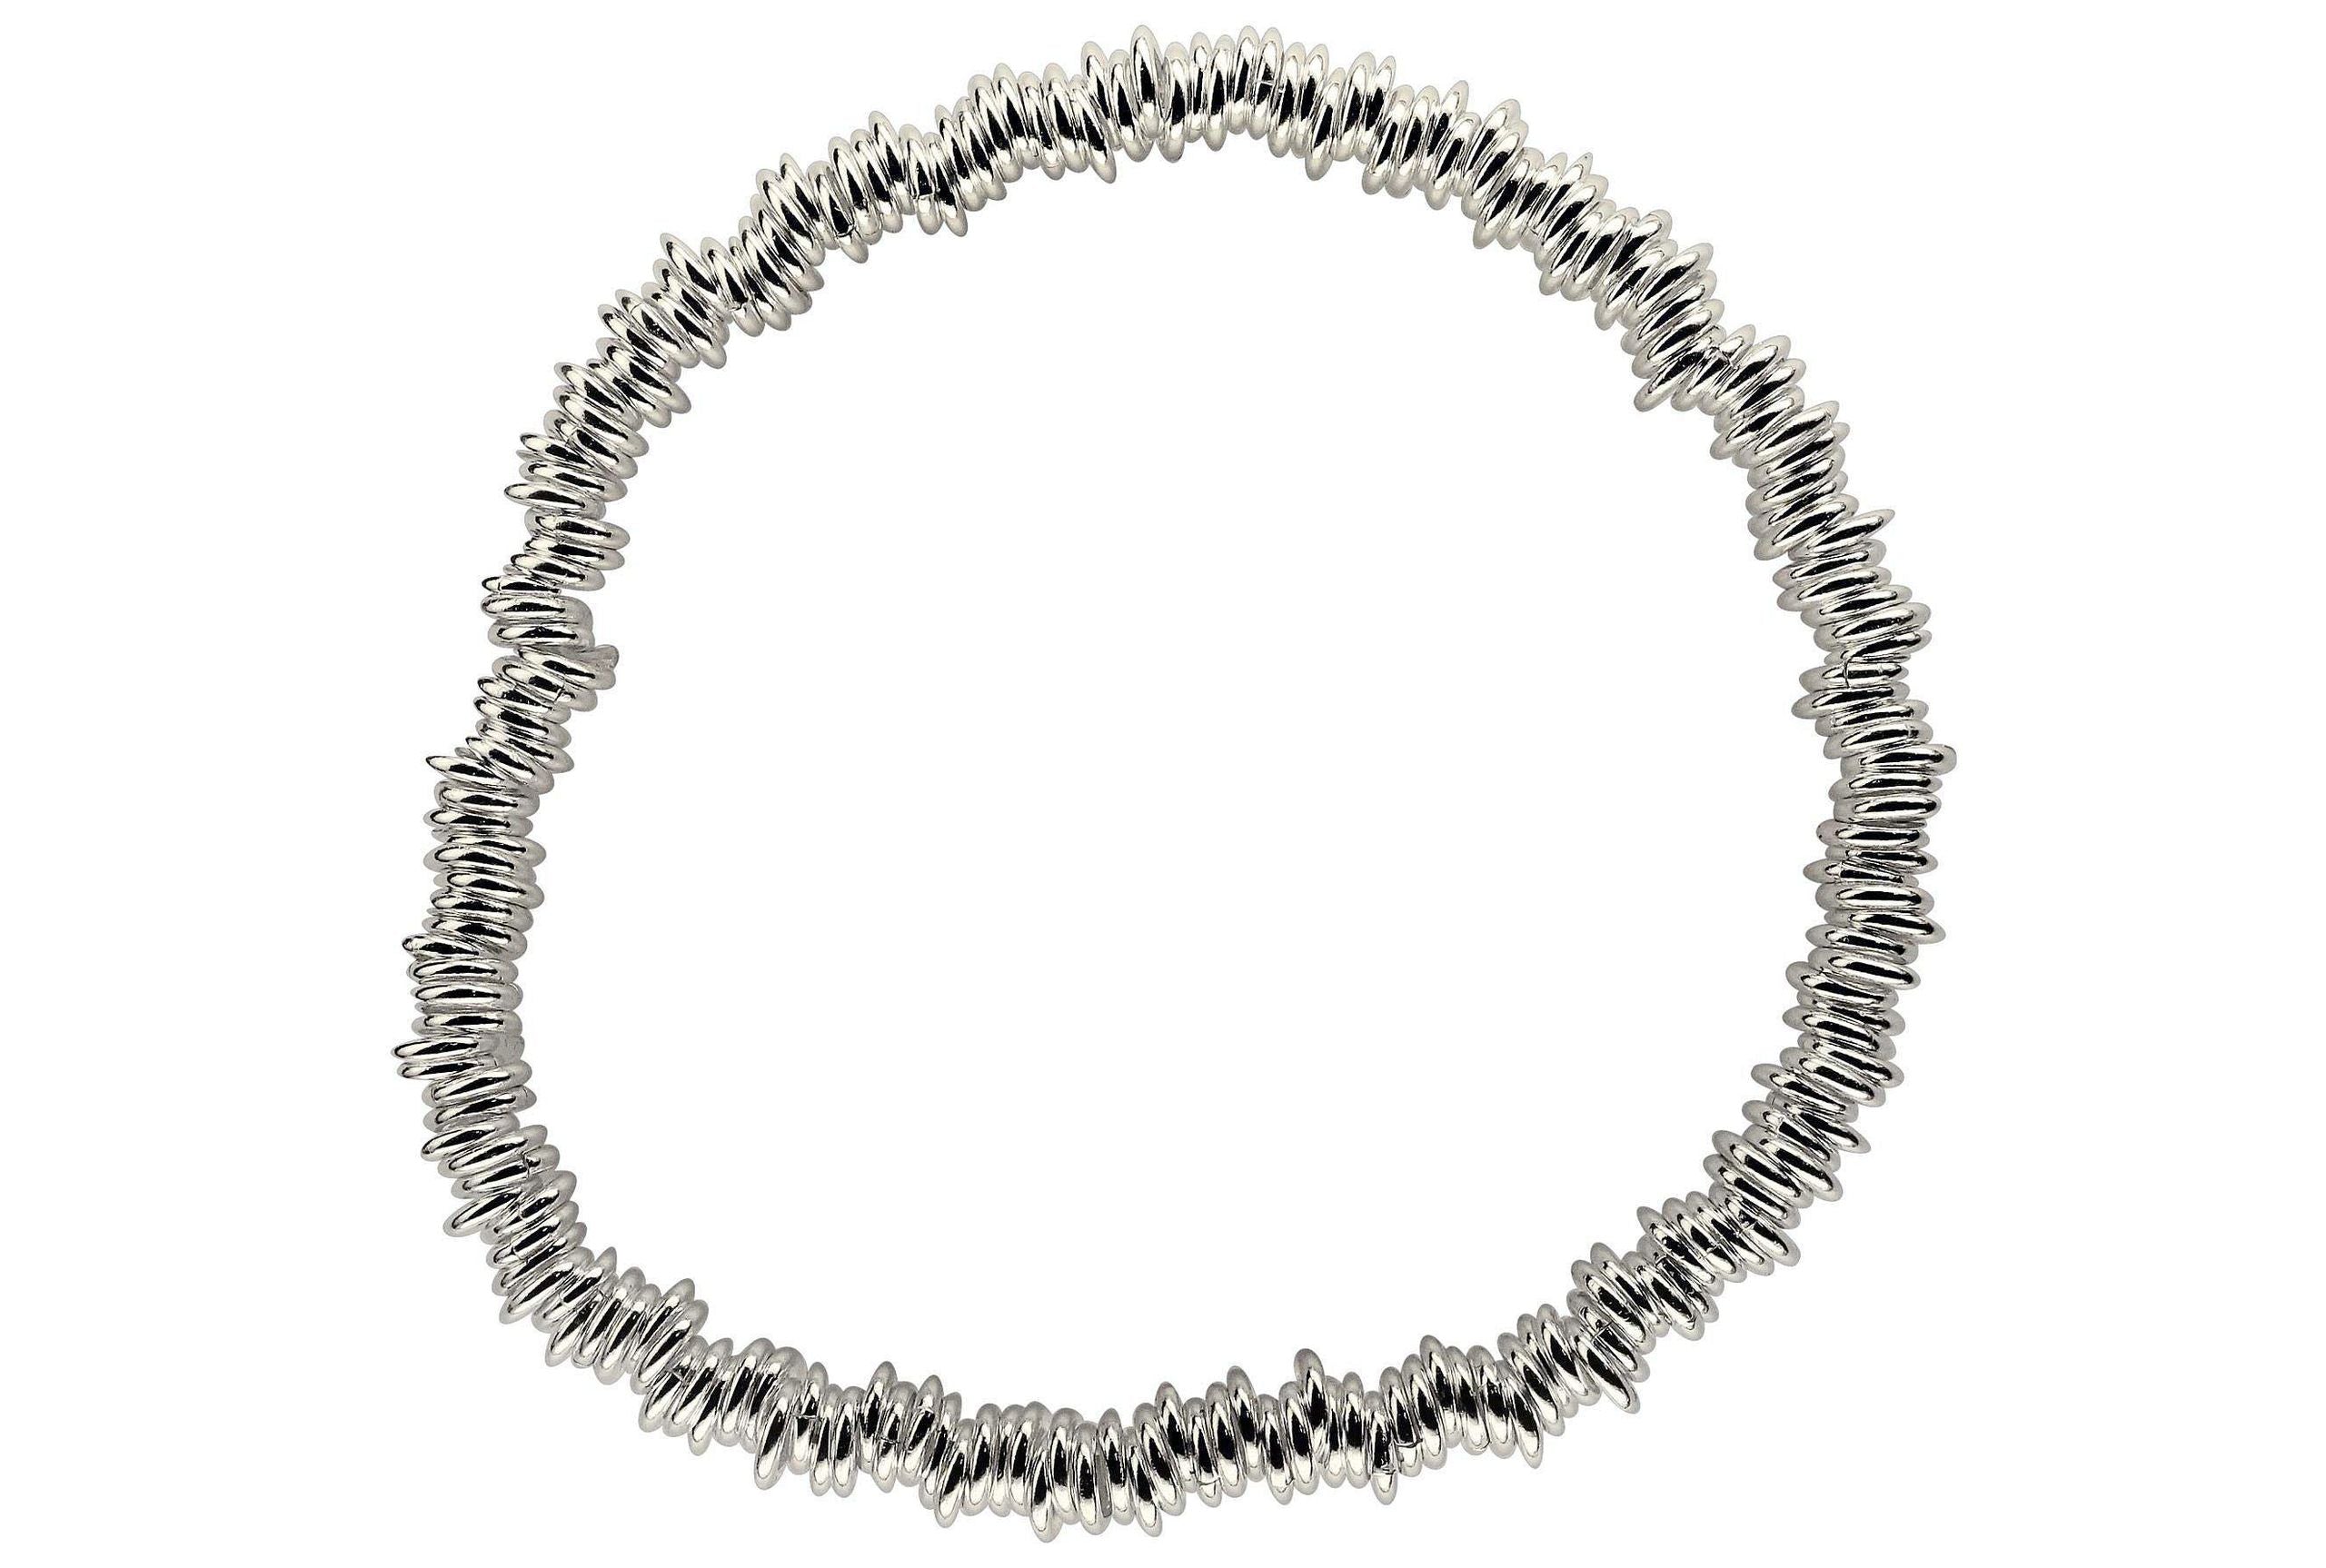 Ein Armband aus Silber für Damen aus vielen kleinen einzelnen Silberringen, die verschlussfrei auf ein Gummiband aufgefädelt sind.